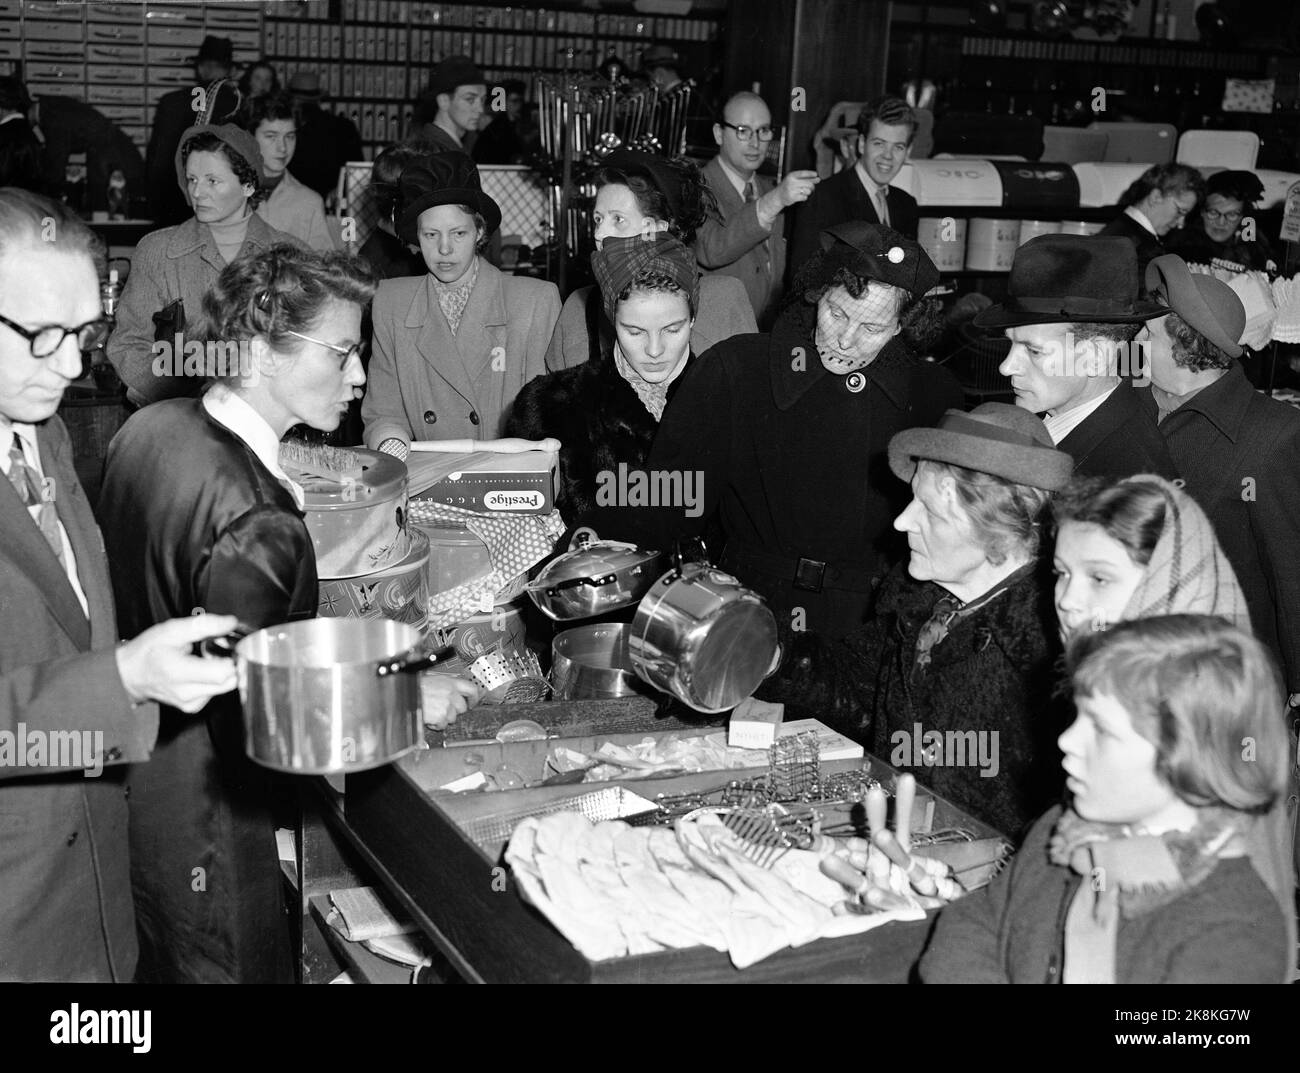 Lo shopping natalizio di Oslo 19511219 è troppo pieno e c'è molta congestione nei negozi. Qui da un negozio di utensili da cucina, dove caldaie e altre famiglie Vai via. Foto: NTB / NTB Foto Stock